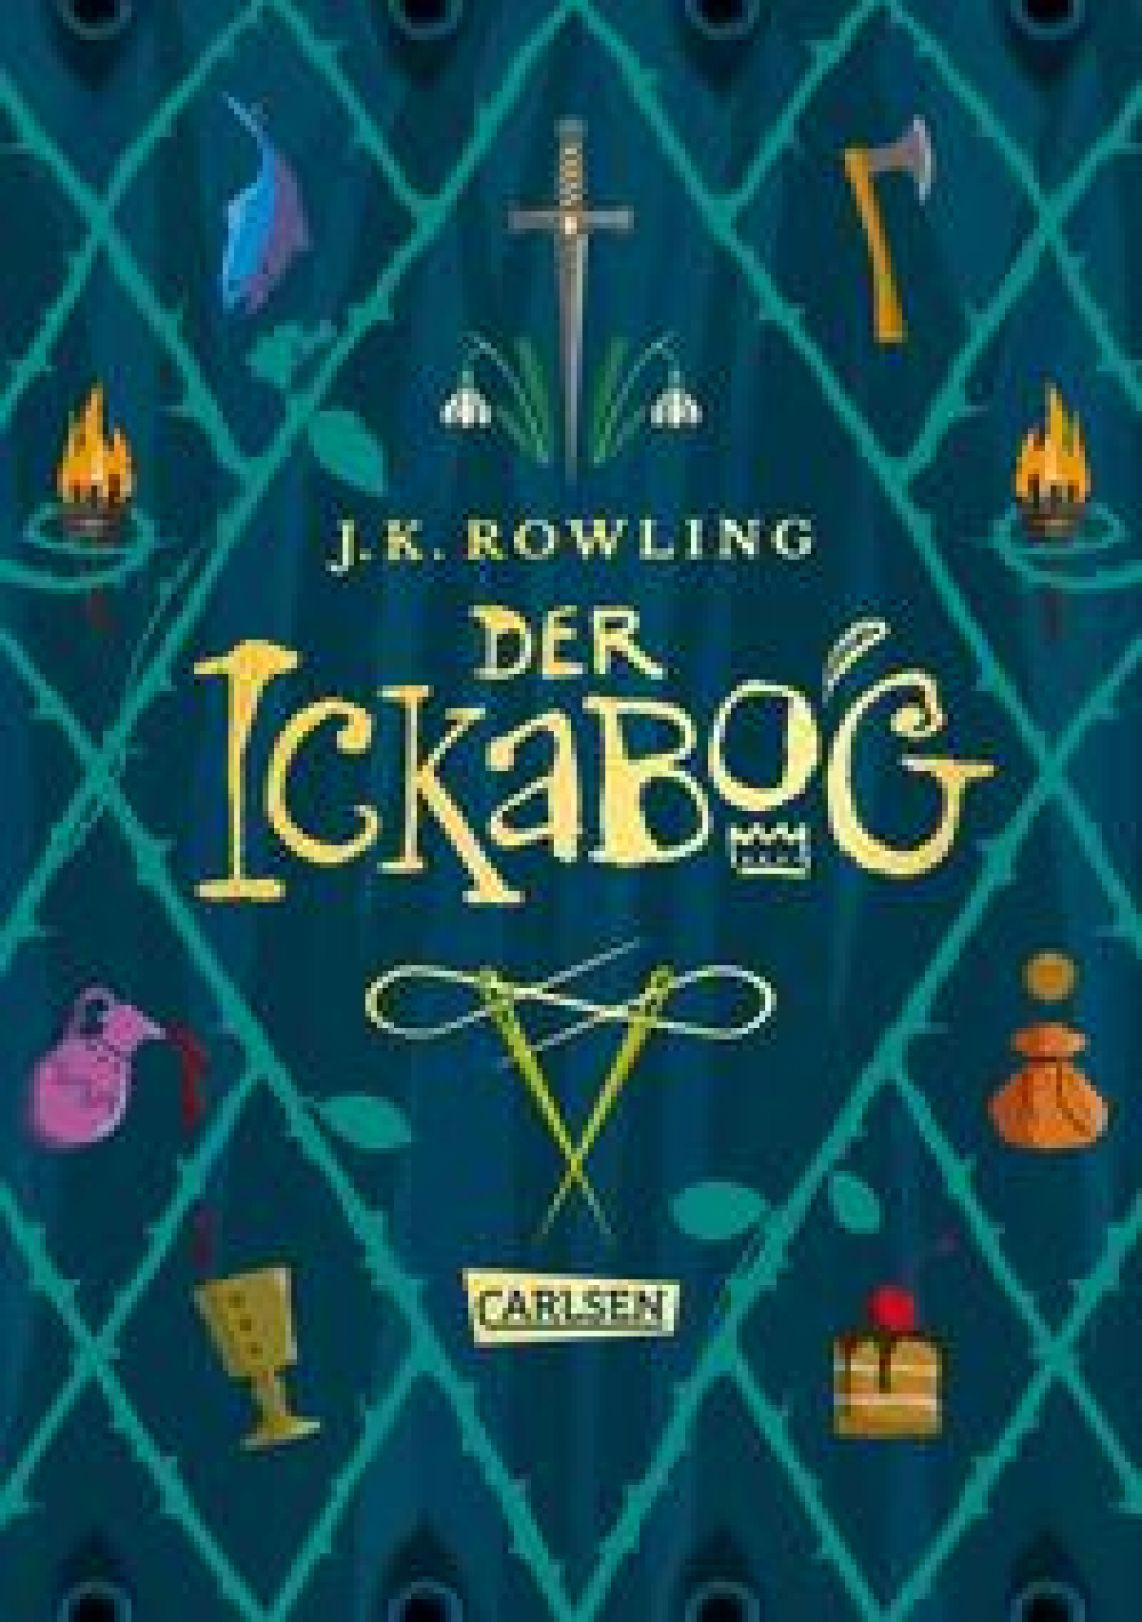 Rowling, J.K. "Der Ickabog"